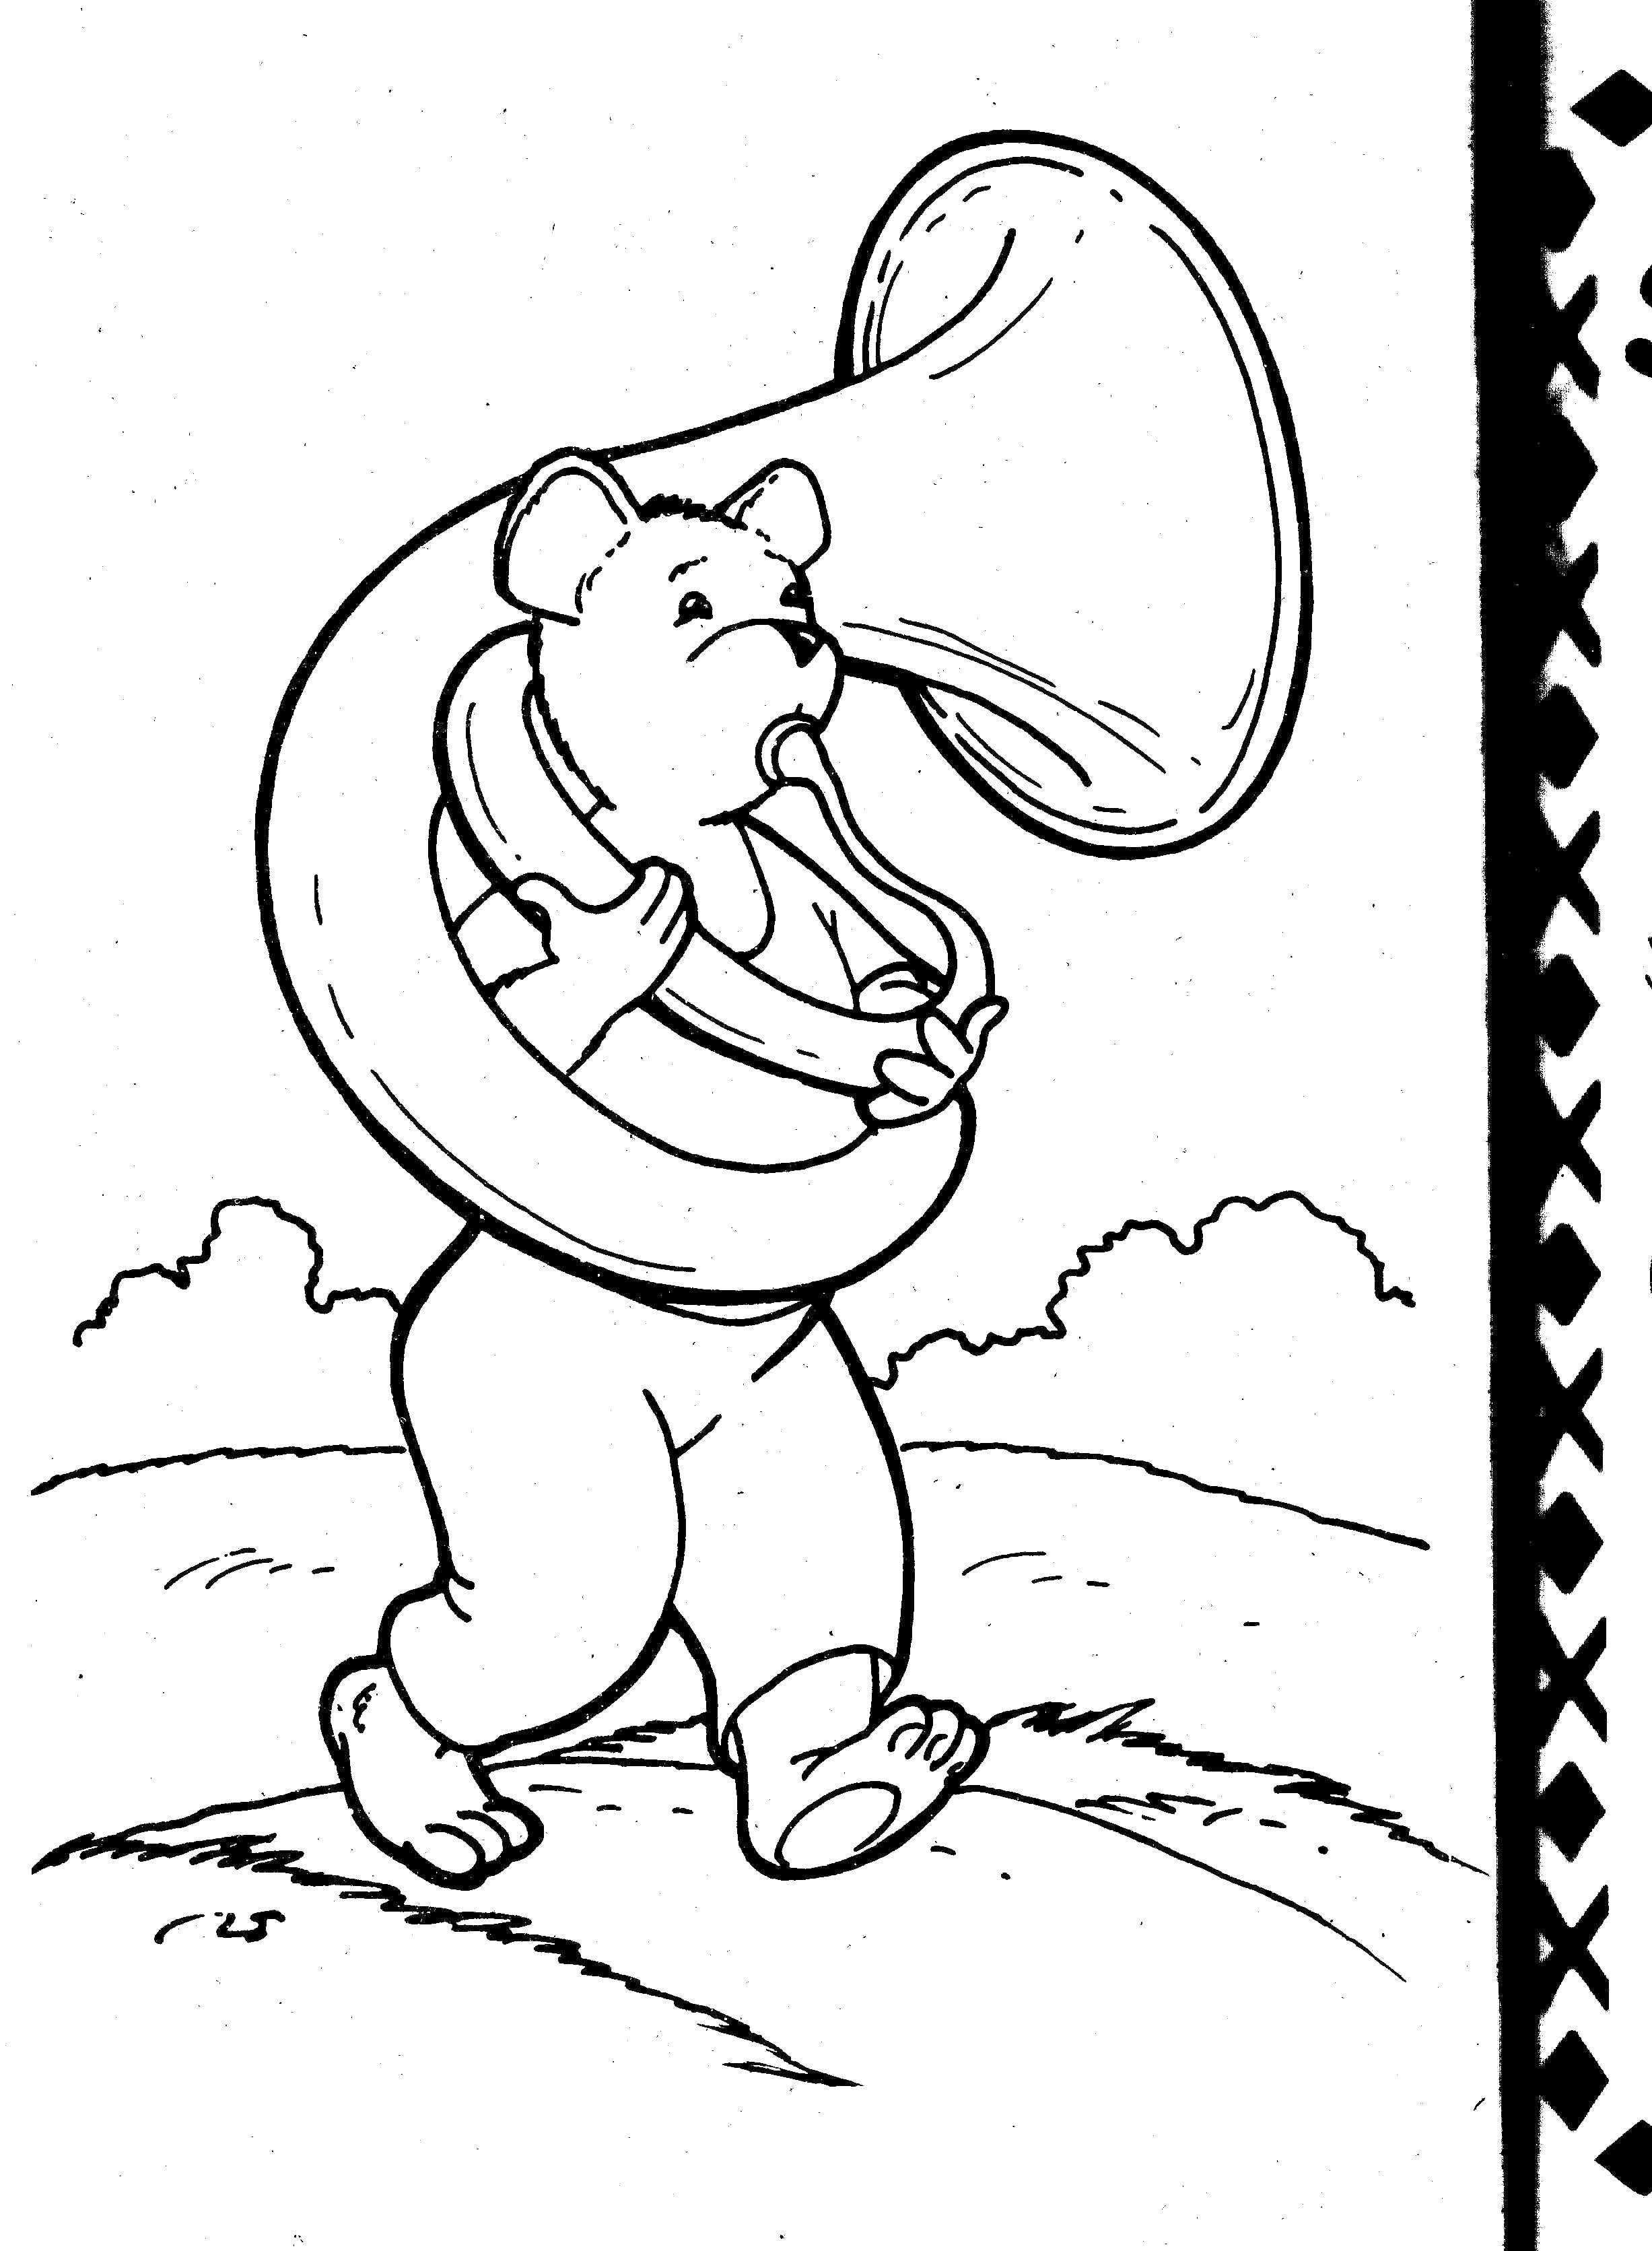 Название: Раскраска Мышка играет на трубе. Категория: Музыка. Теги: Музыка, инструмент, музыкант, ноты.